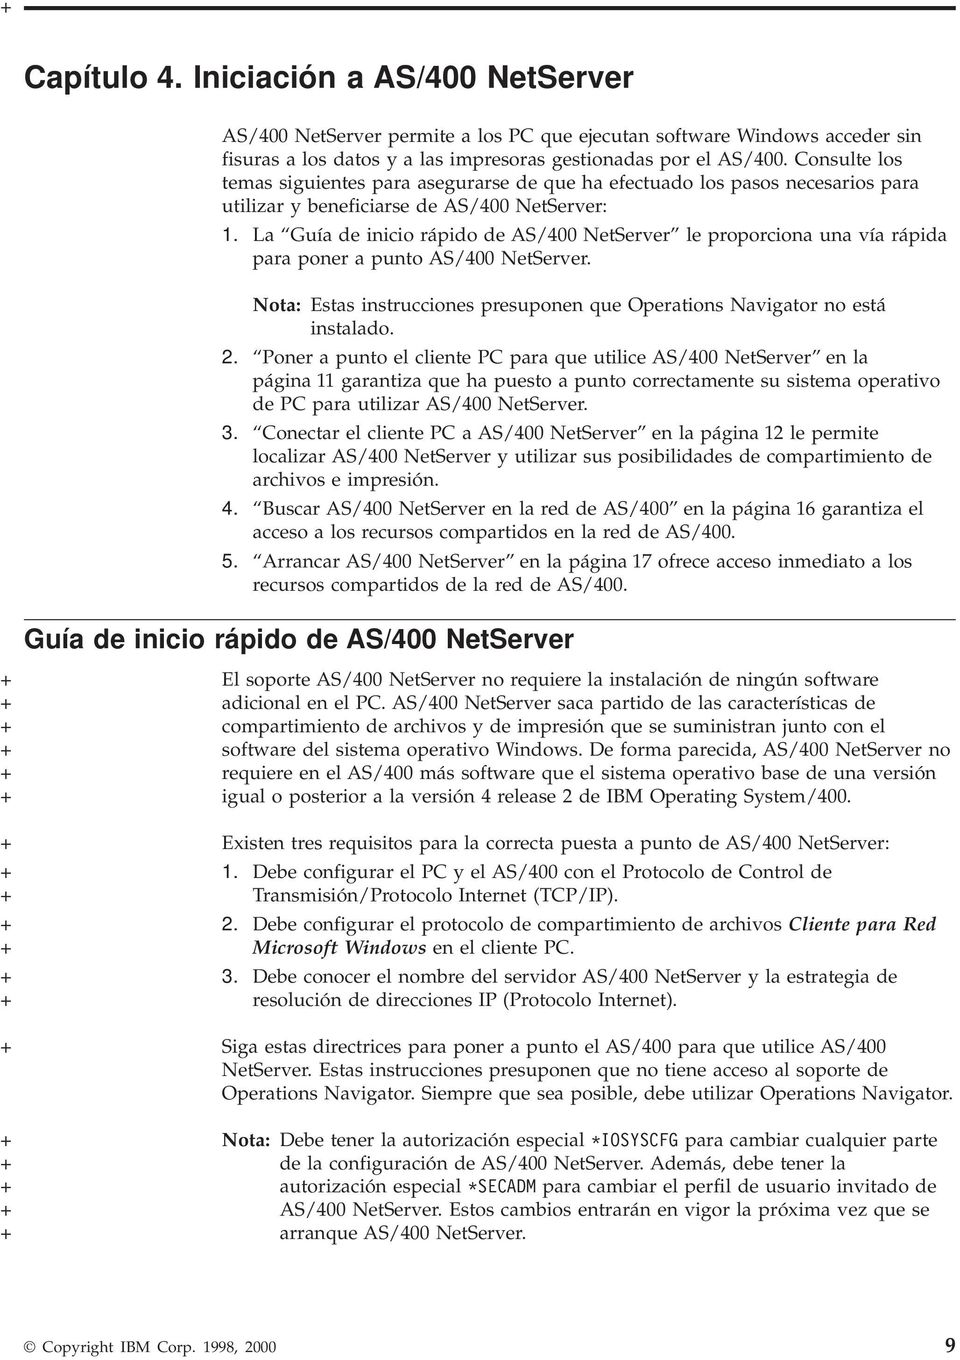 La Guía de inicio rápido de AS/400 NetSerer le proporciona una ía rápida para poner a punto AS/400 NetSerer. Nota: Estas instrucciones presuponen que Operations Naigator no está instalado. 2.